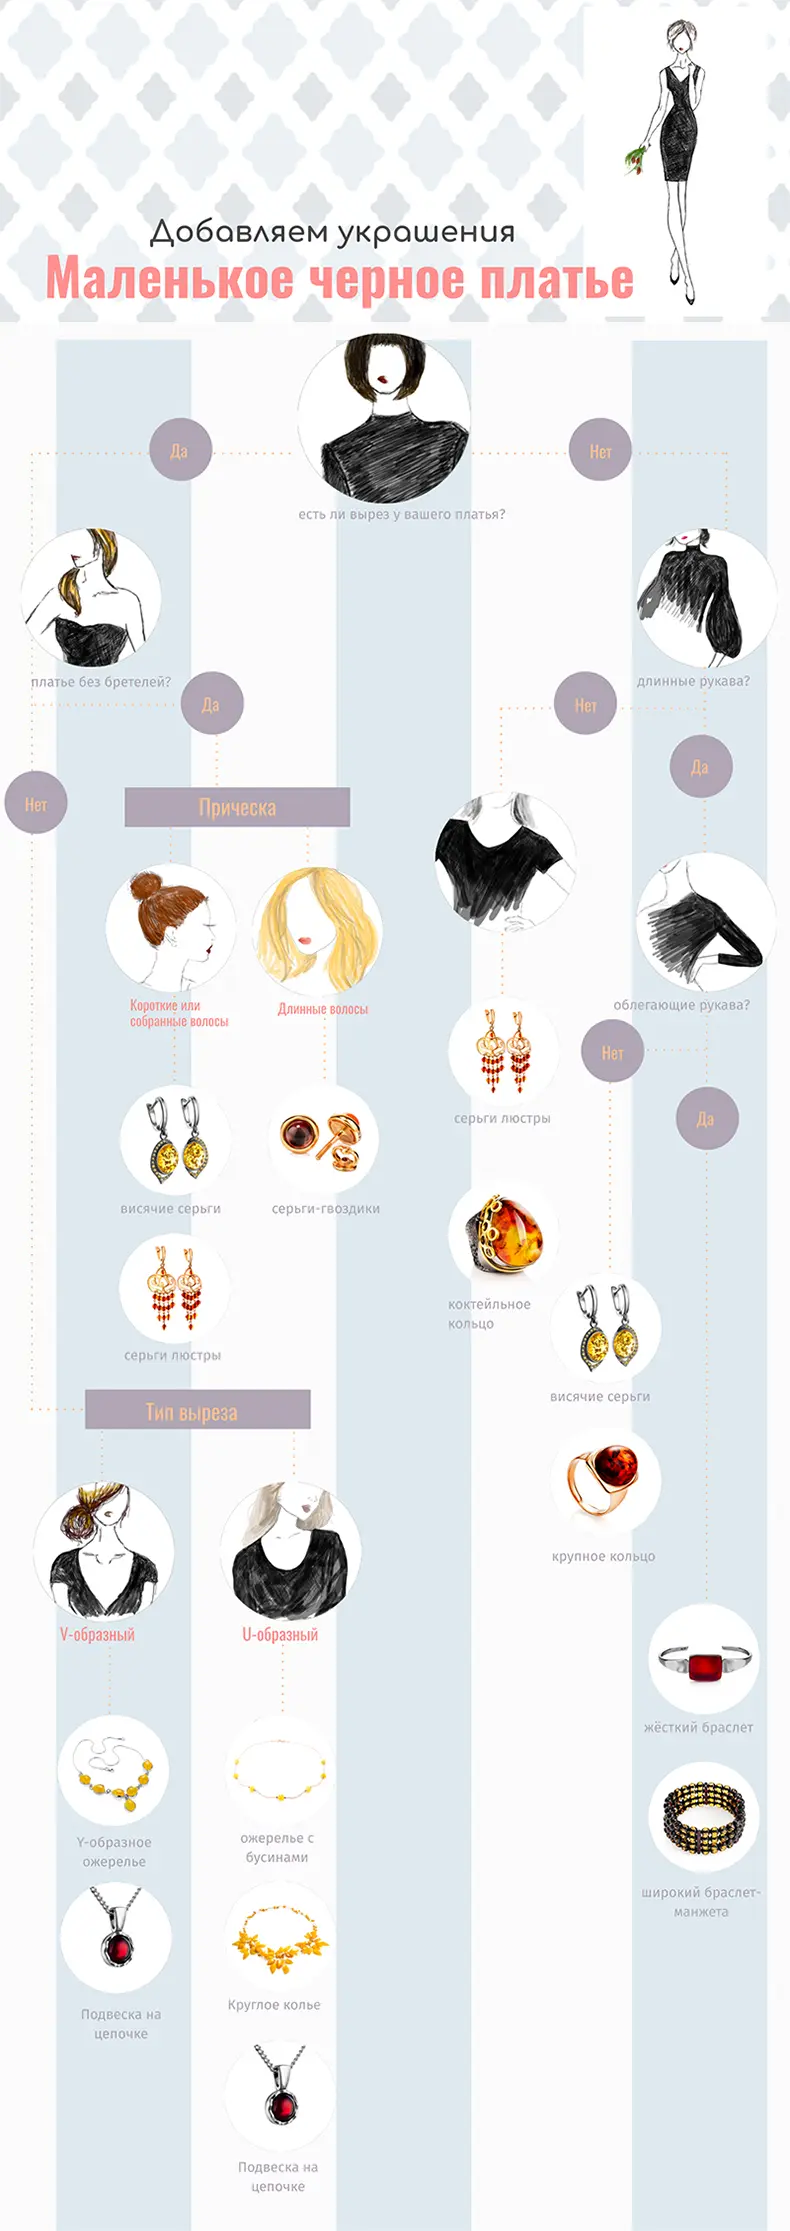 Инфографика как сочетать украшения с маленьким черным платьем